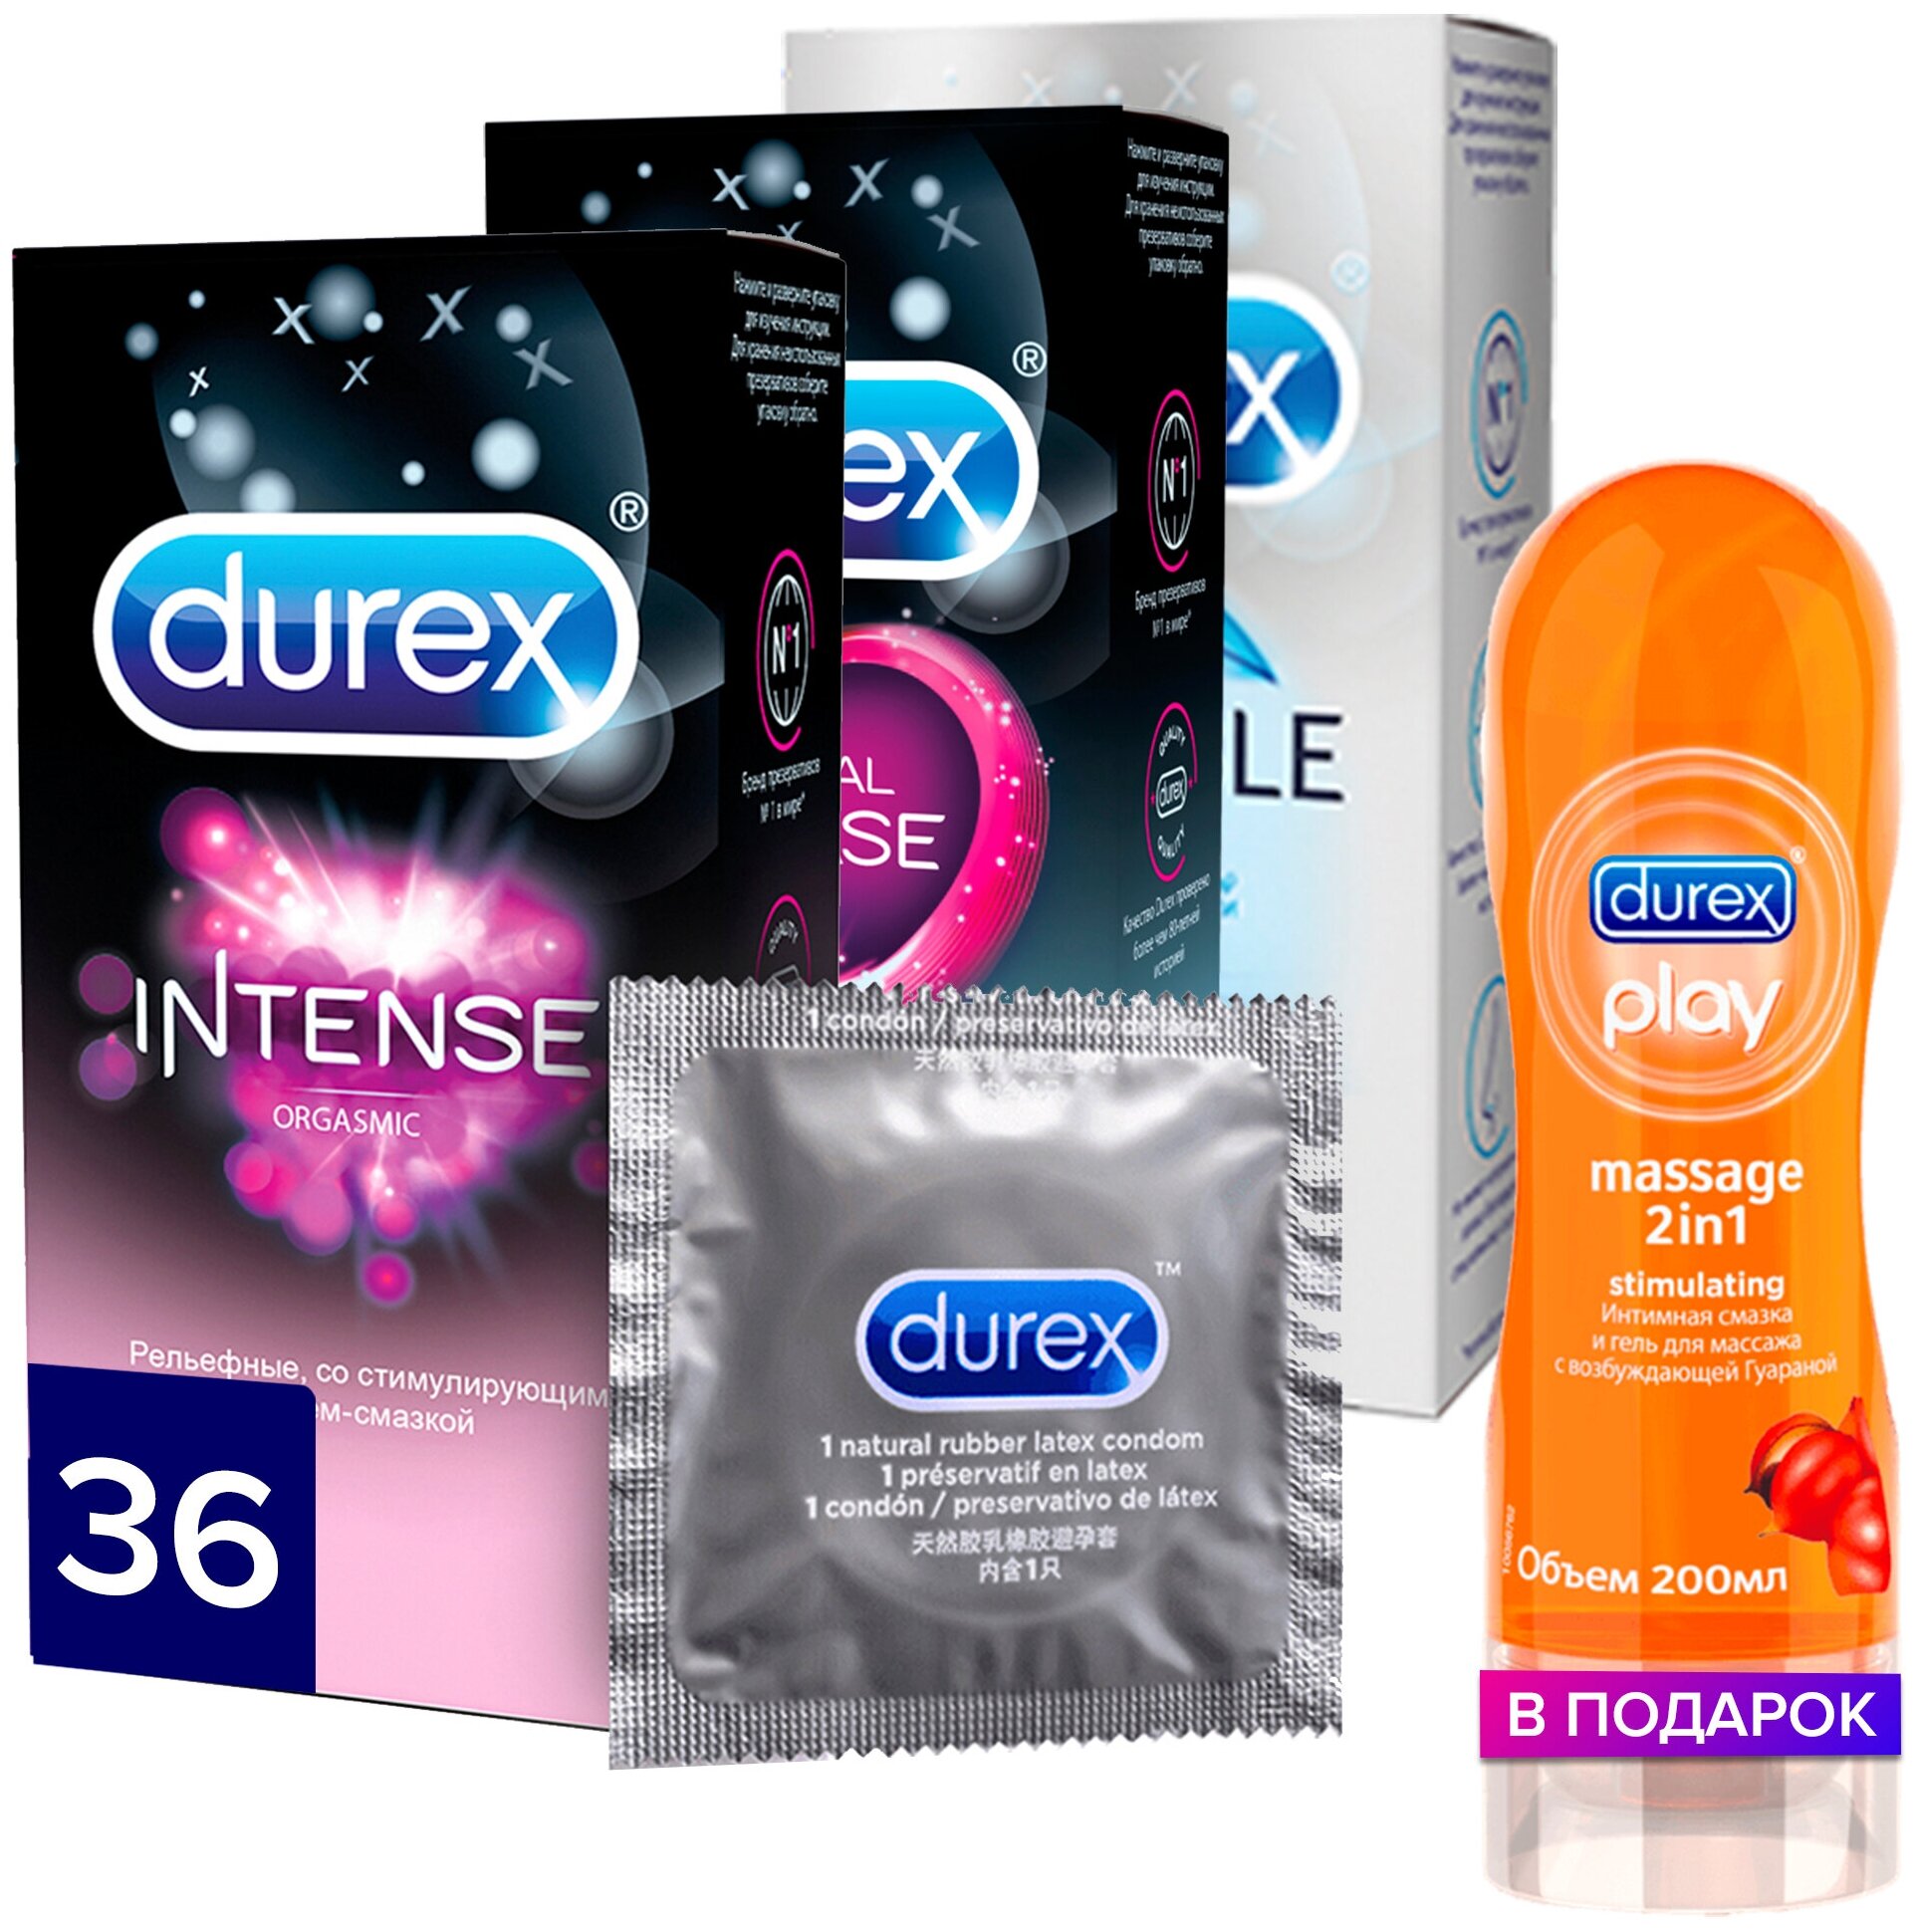 лучшие презервативы для анала фото 23